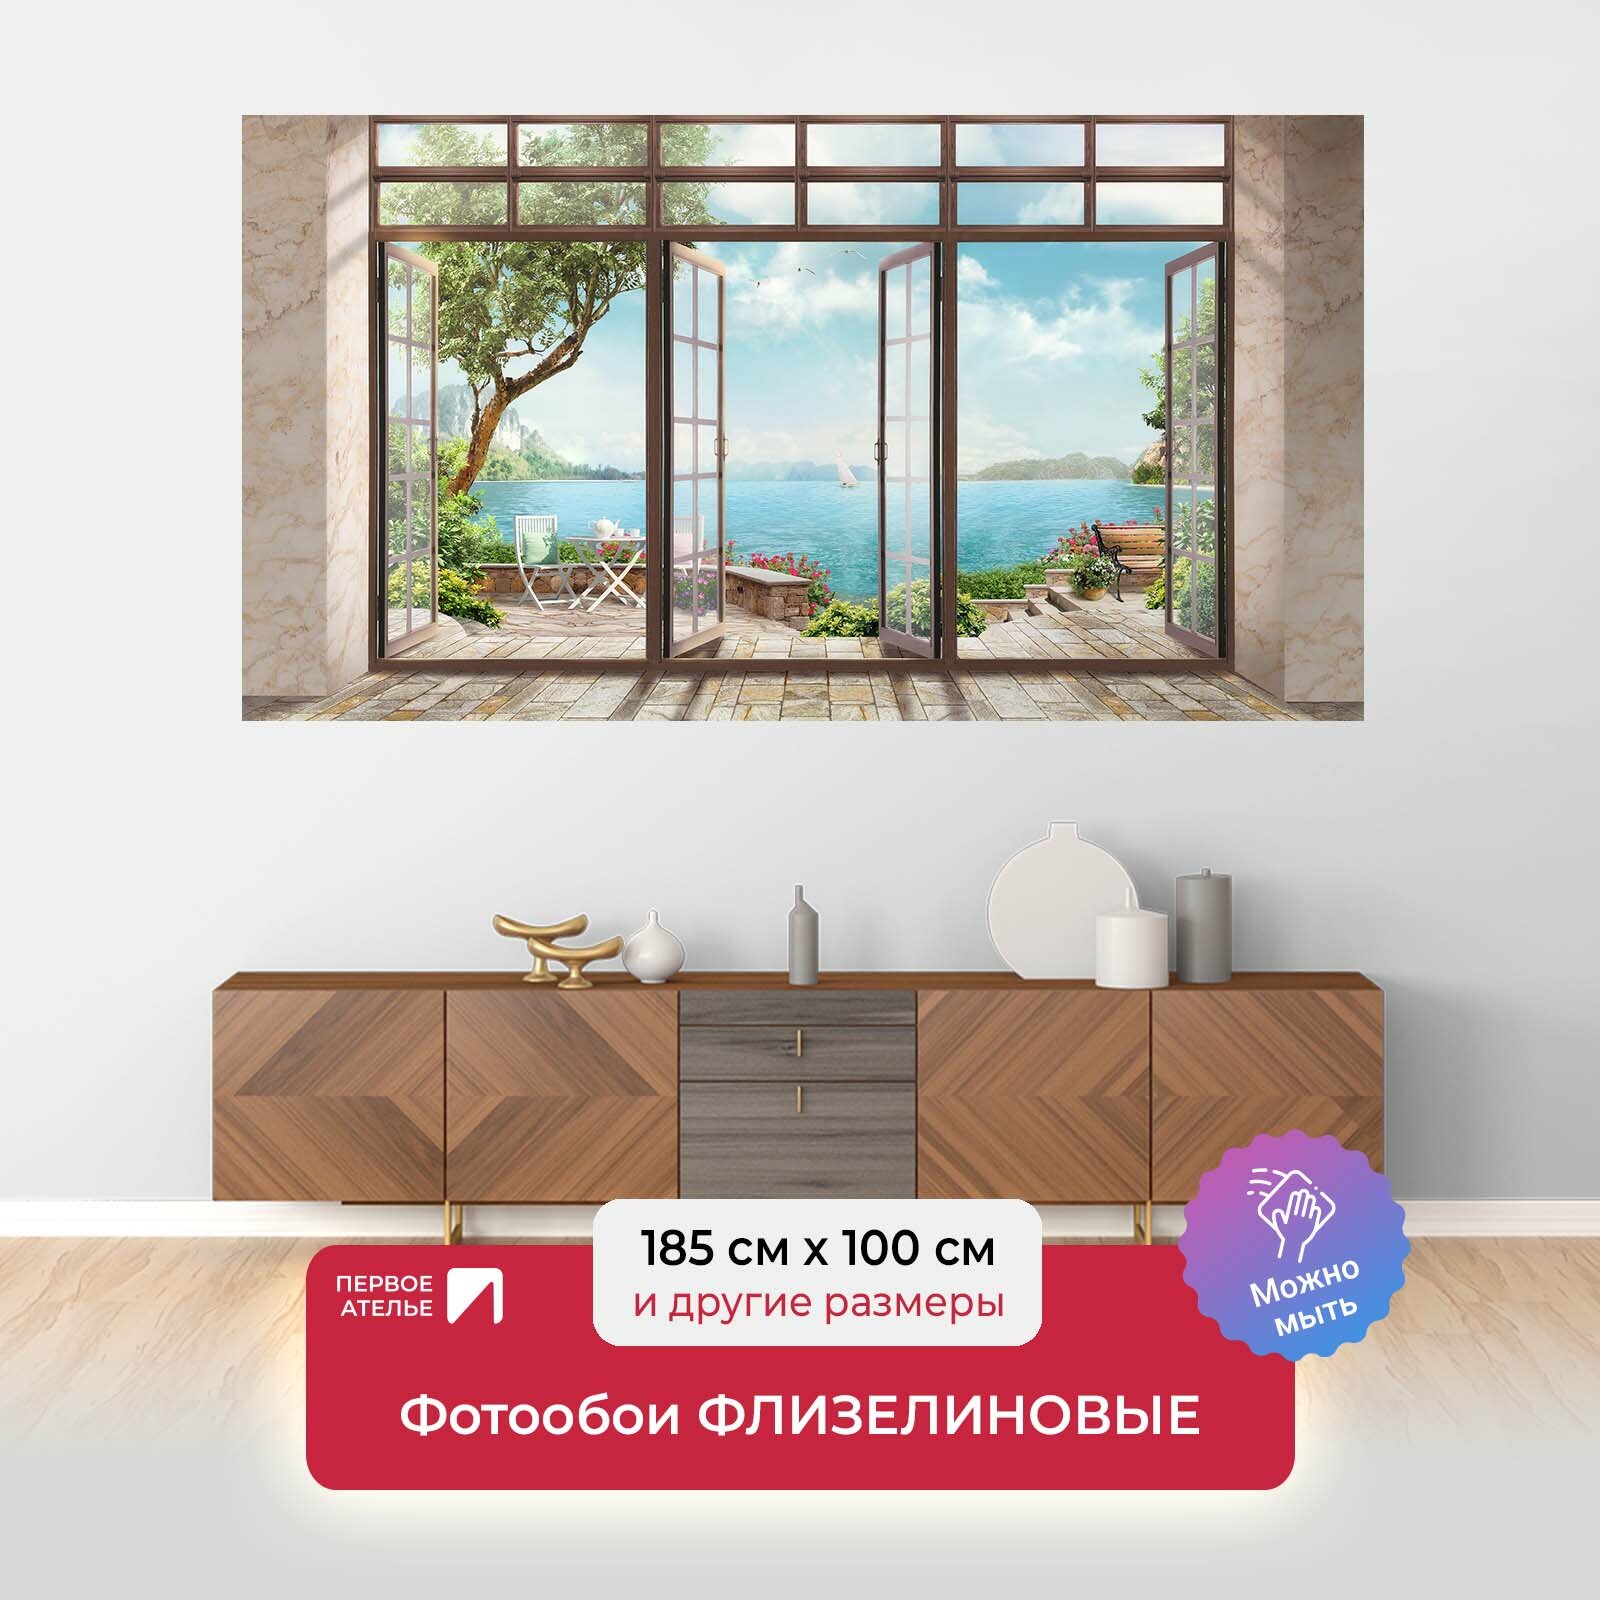 Фотообои на стену первое ателье "Панорама моря из открытого окна" 185х100 см (ШхВ), флизелиновые Premium